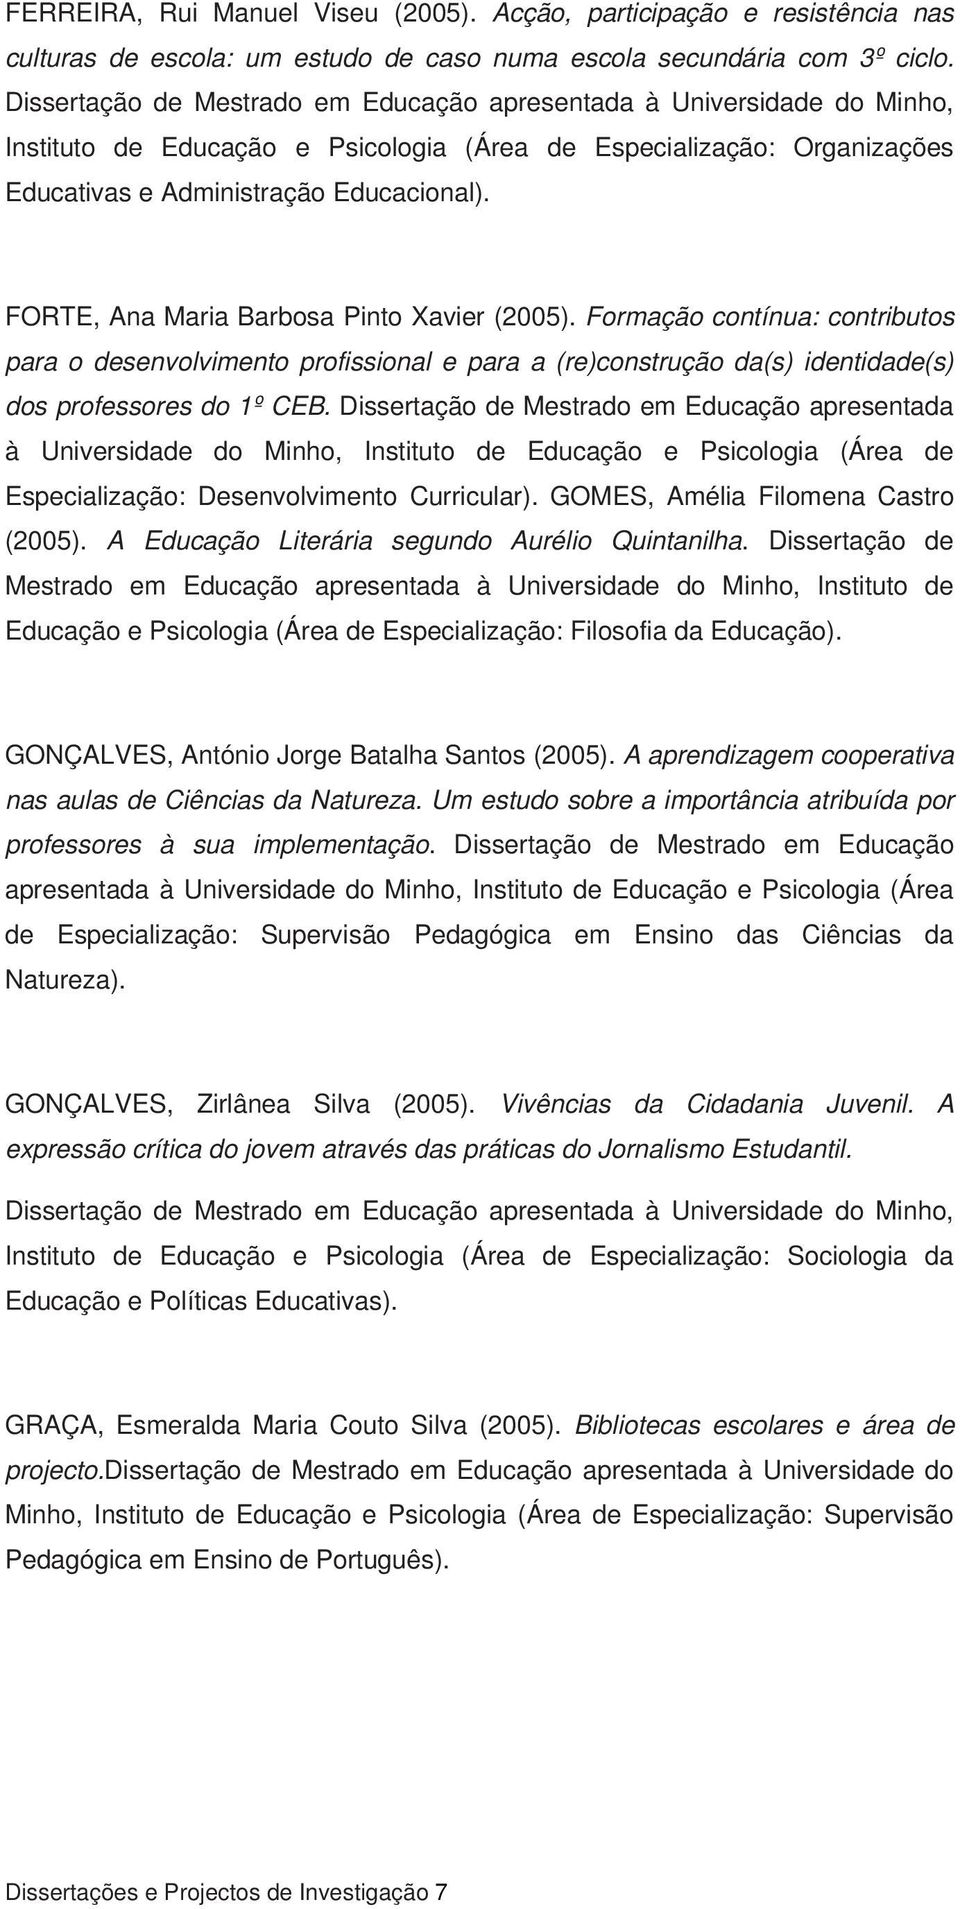 FORTE, Ana Maria Barbosa Pinto Xavier (2005). Formação contínua: contributos para o desenvolvimento profissional e para a (re)construção da(s) identidade(s) dos professores do 1º CEB.